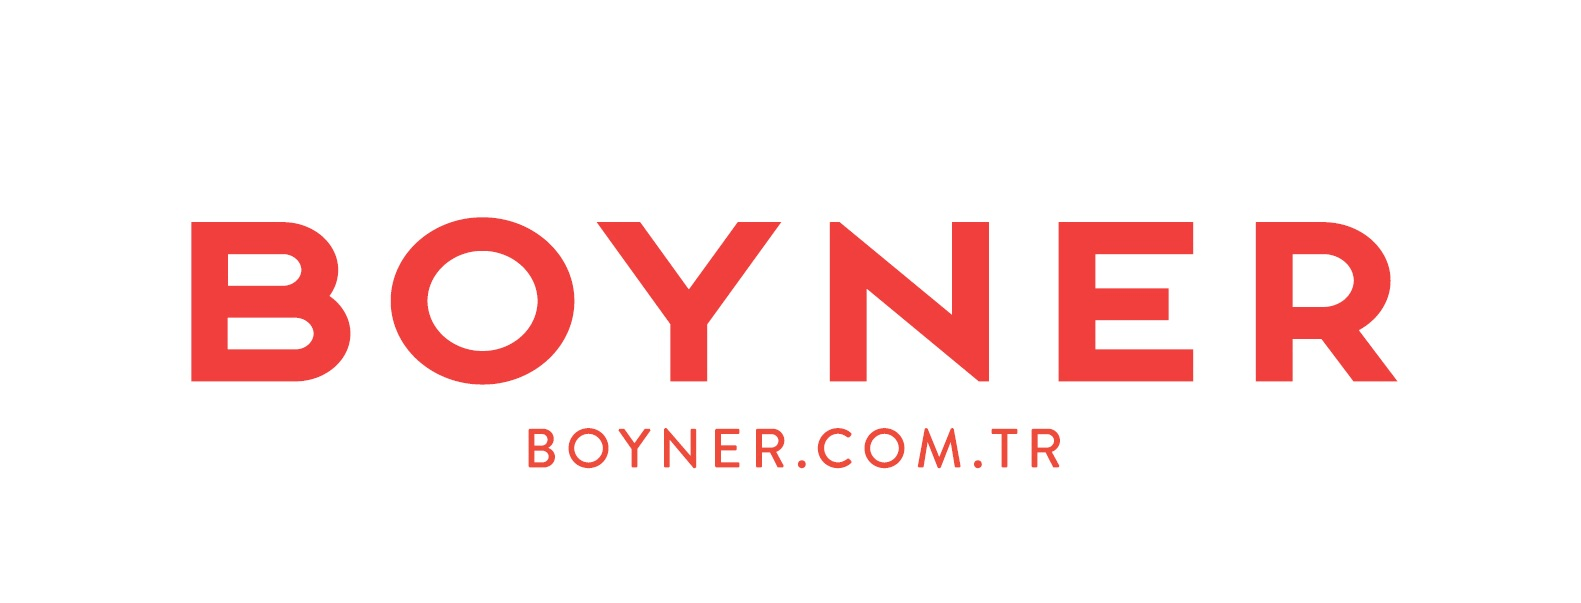 Boyner.com.tr ve Boyner Mobil’de peşin fiyatına 6'ya varan taksit fırsatı!